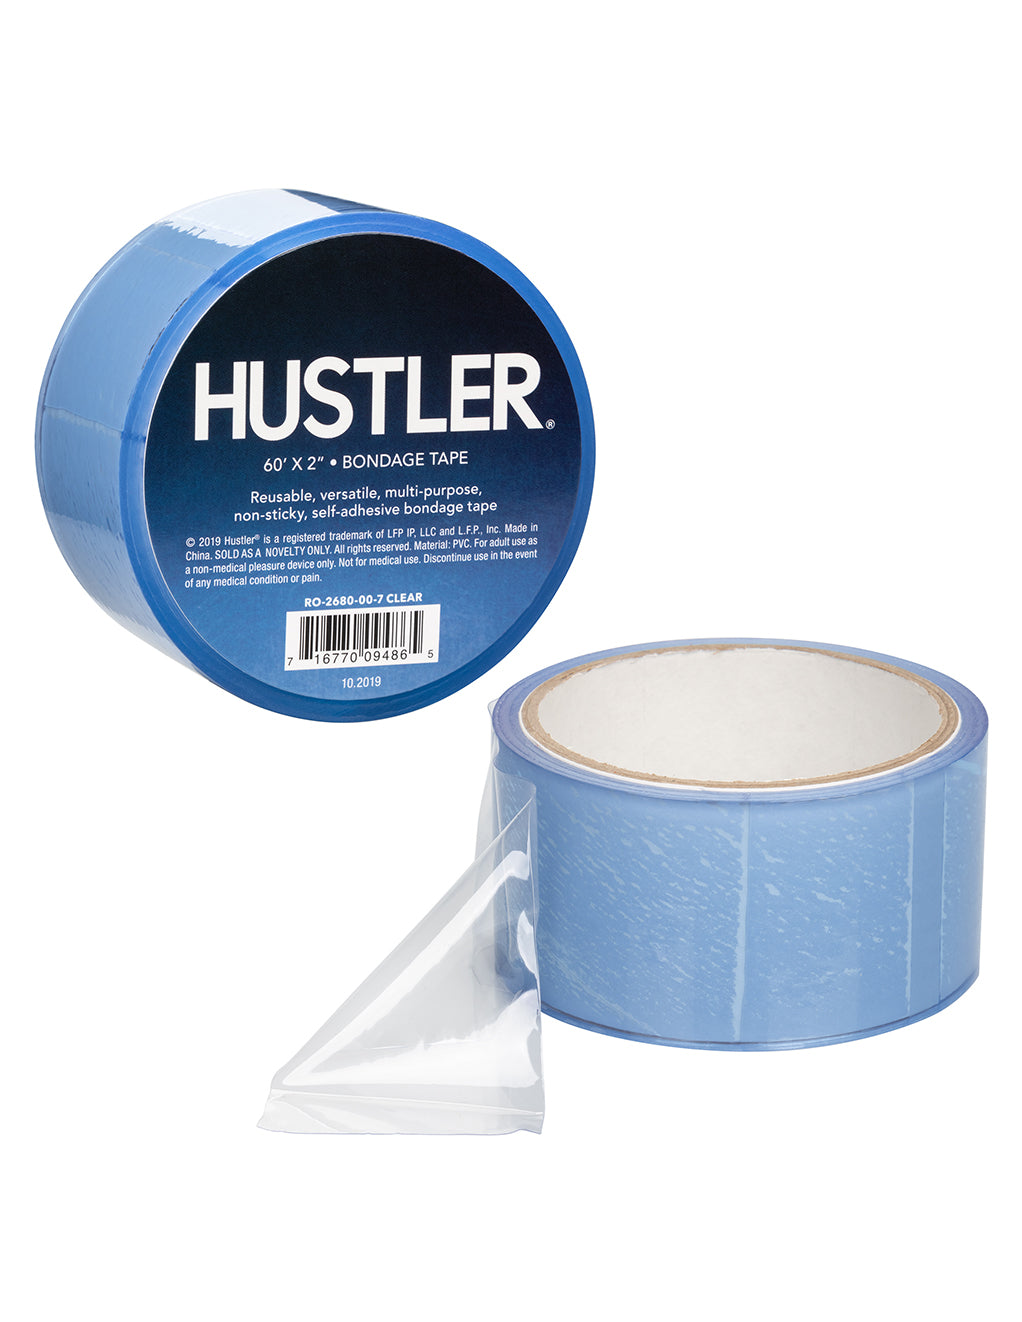 HUSTLER Bondage Tape- Clear- logo- details